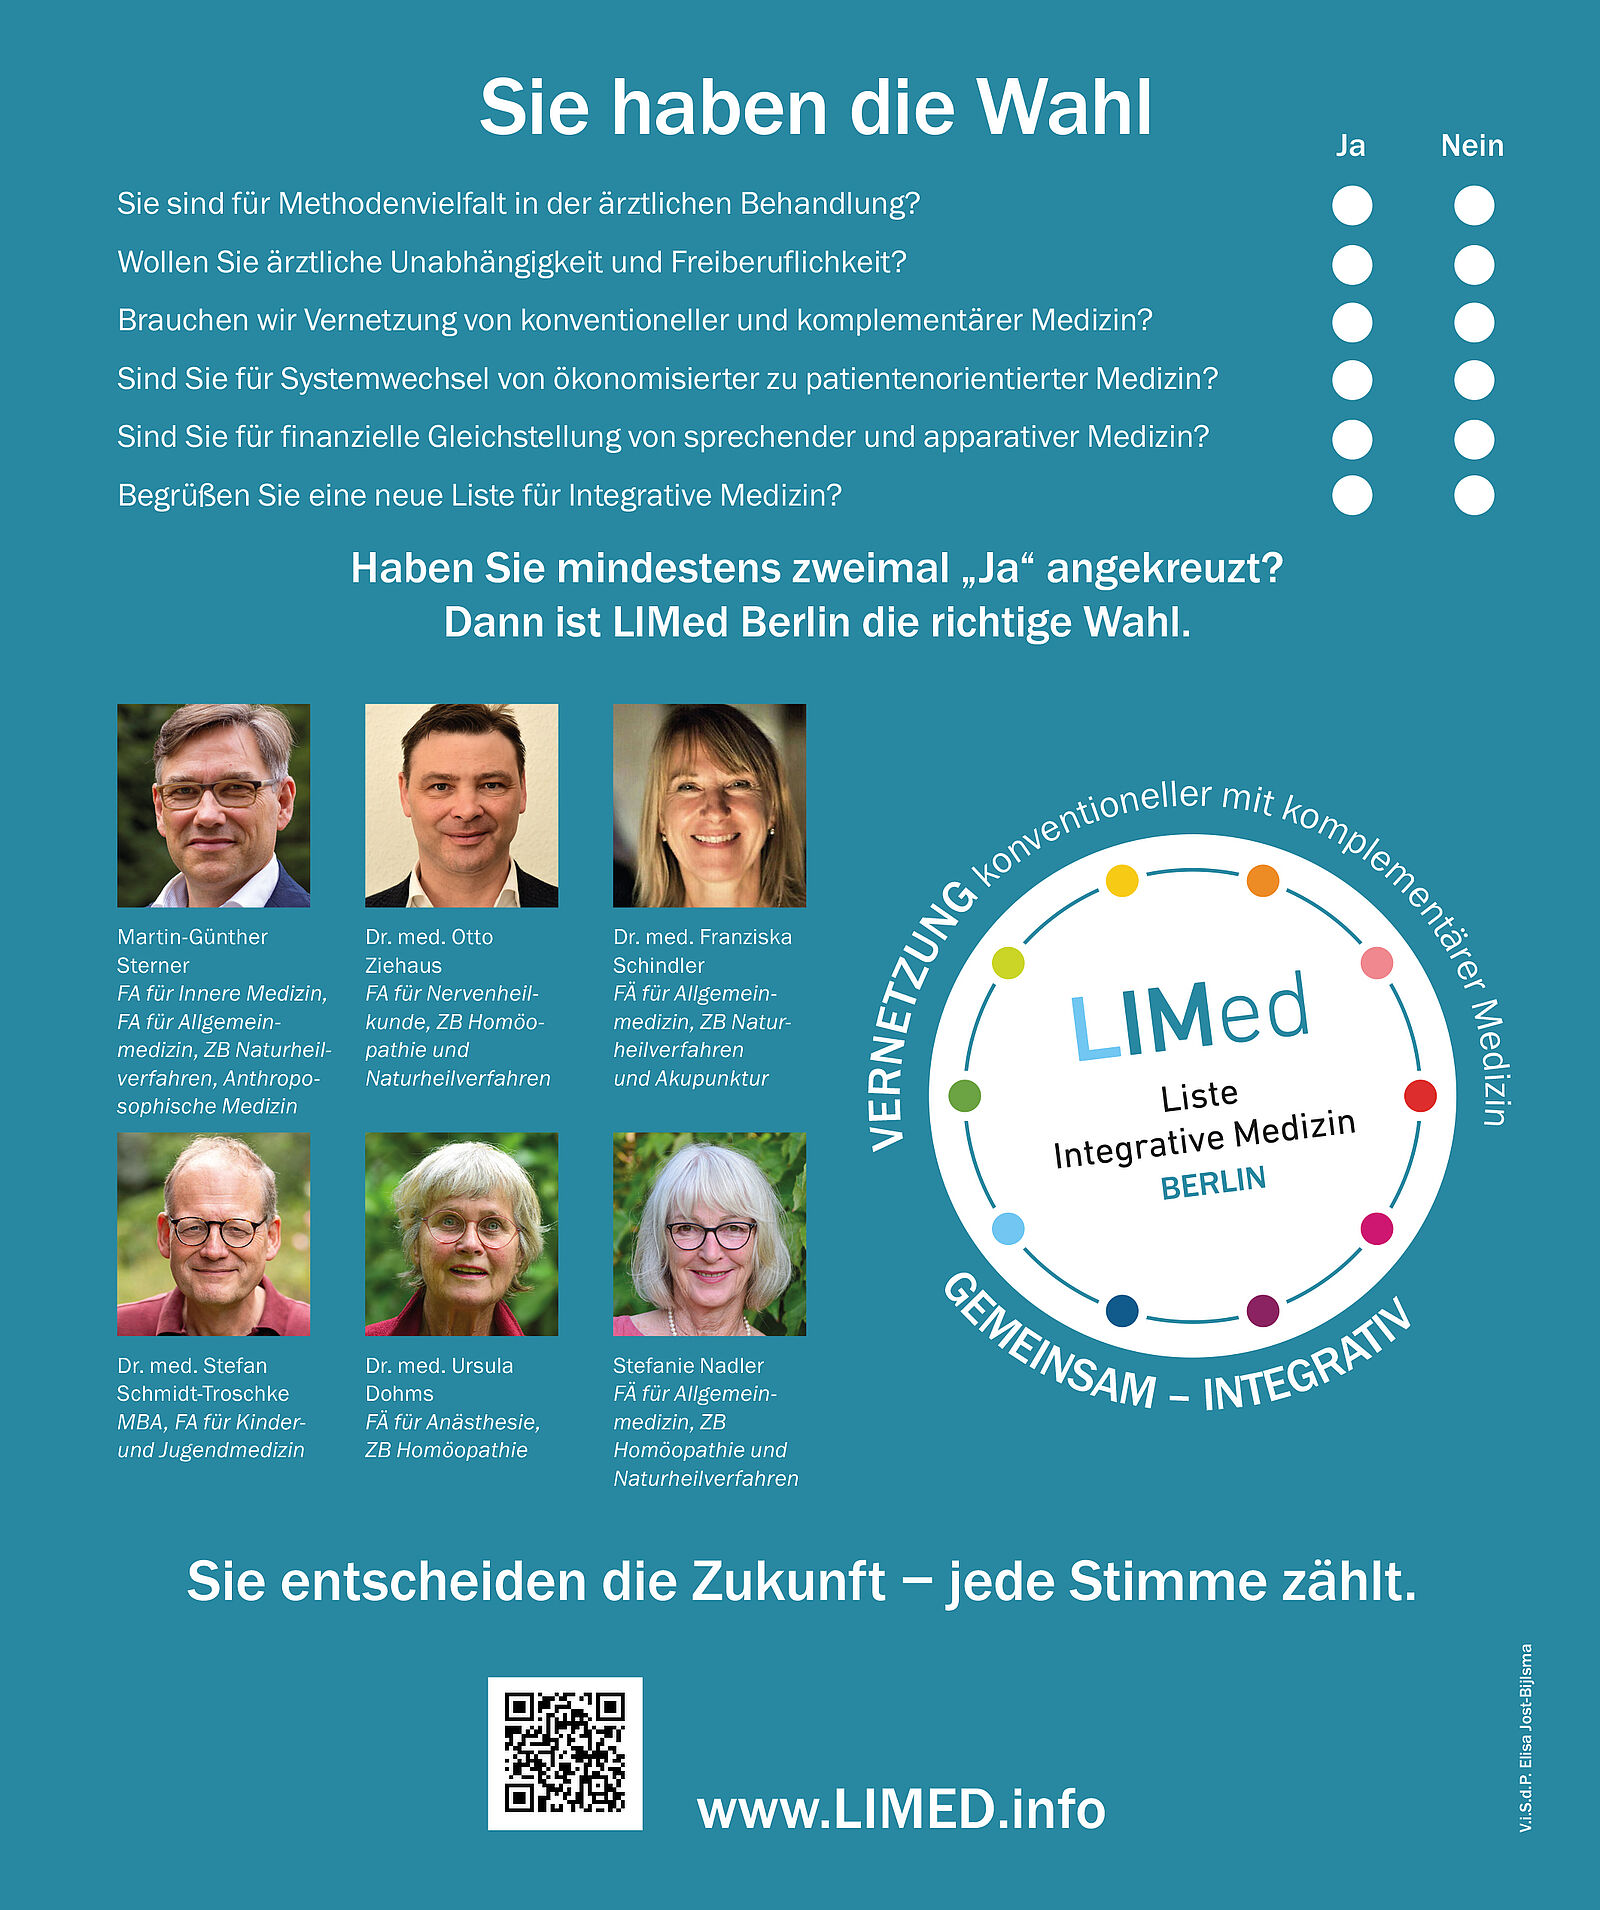 Hier ist die Anzeige für die LIMed Berlin zu sehen, mit allen 6 Kandidierenden, dem Logo und einem Wahl-o-maten.